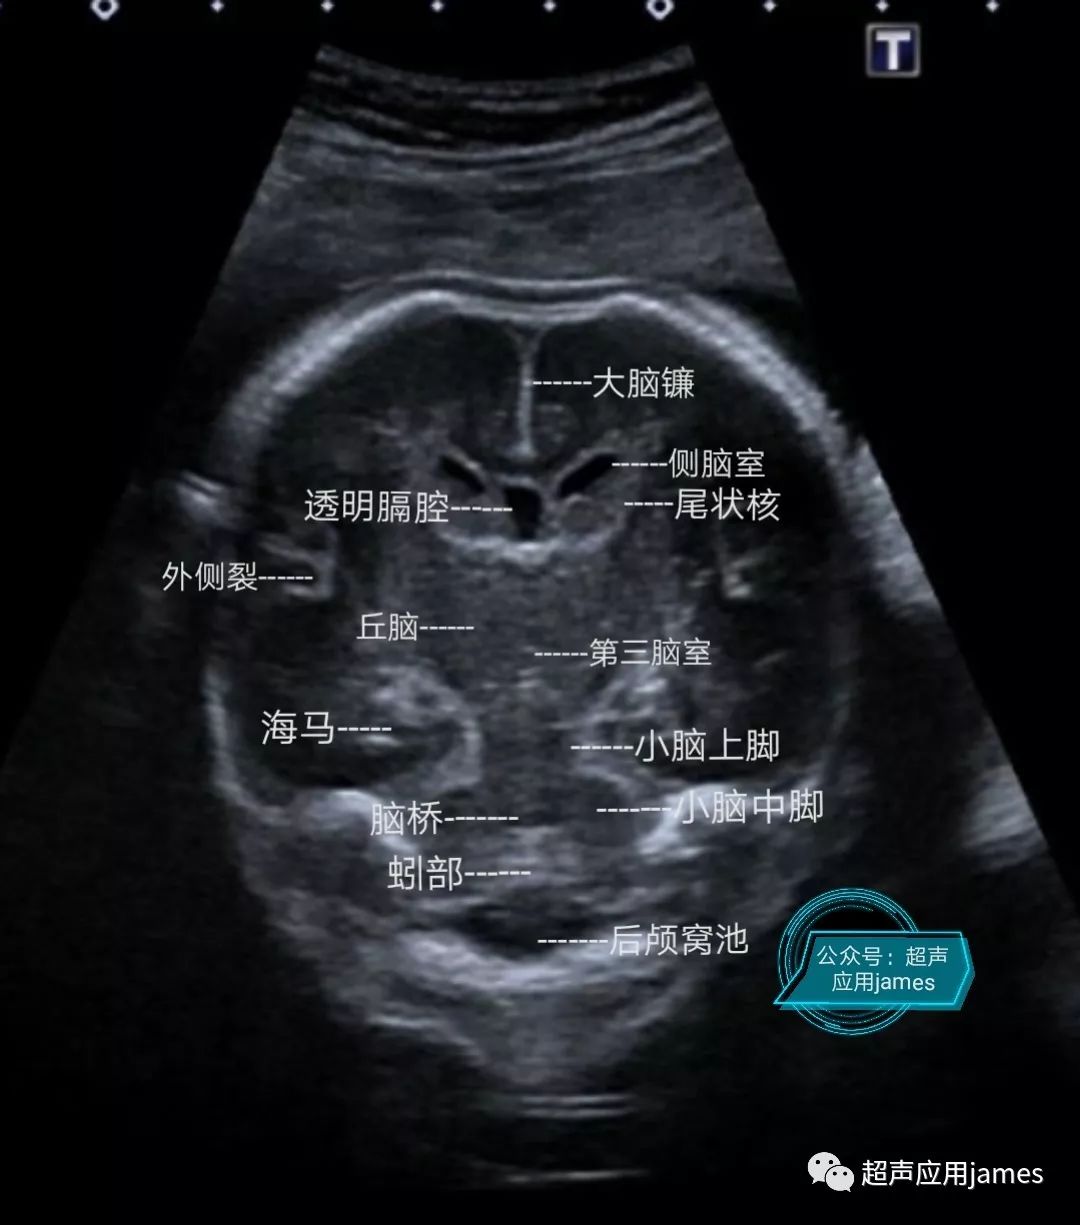 胎儿颅脑解剖示意图图片